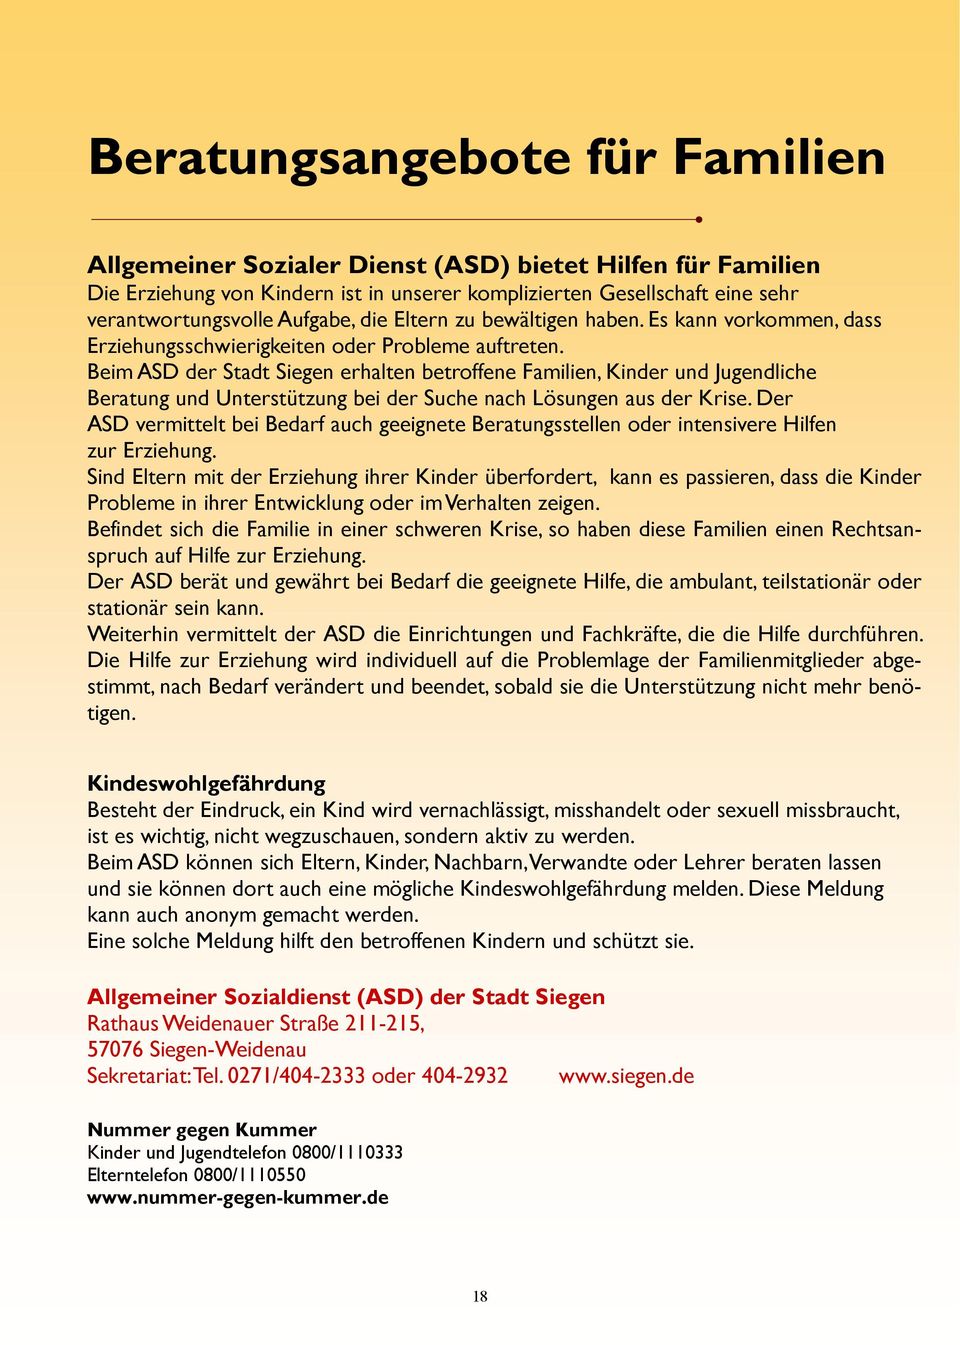 Beim ASD der Stadt Siegen erhalten betroffene Familien, Kinder und Jugendliche Beratung und Unterstützung bei der Suche nach Lösungen aus der Krise.